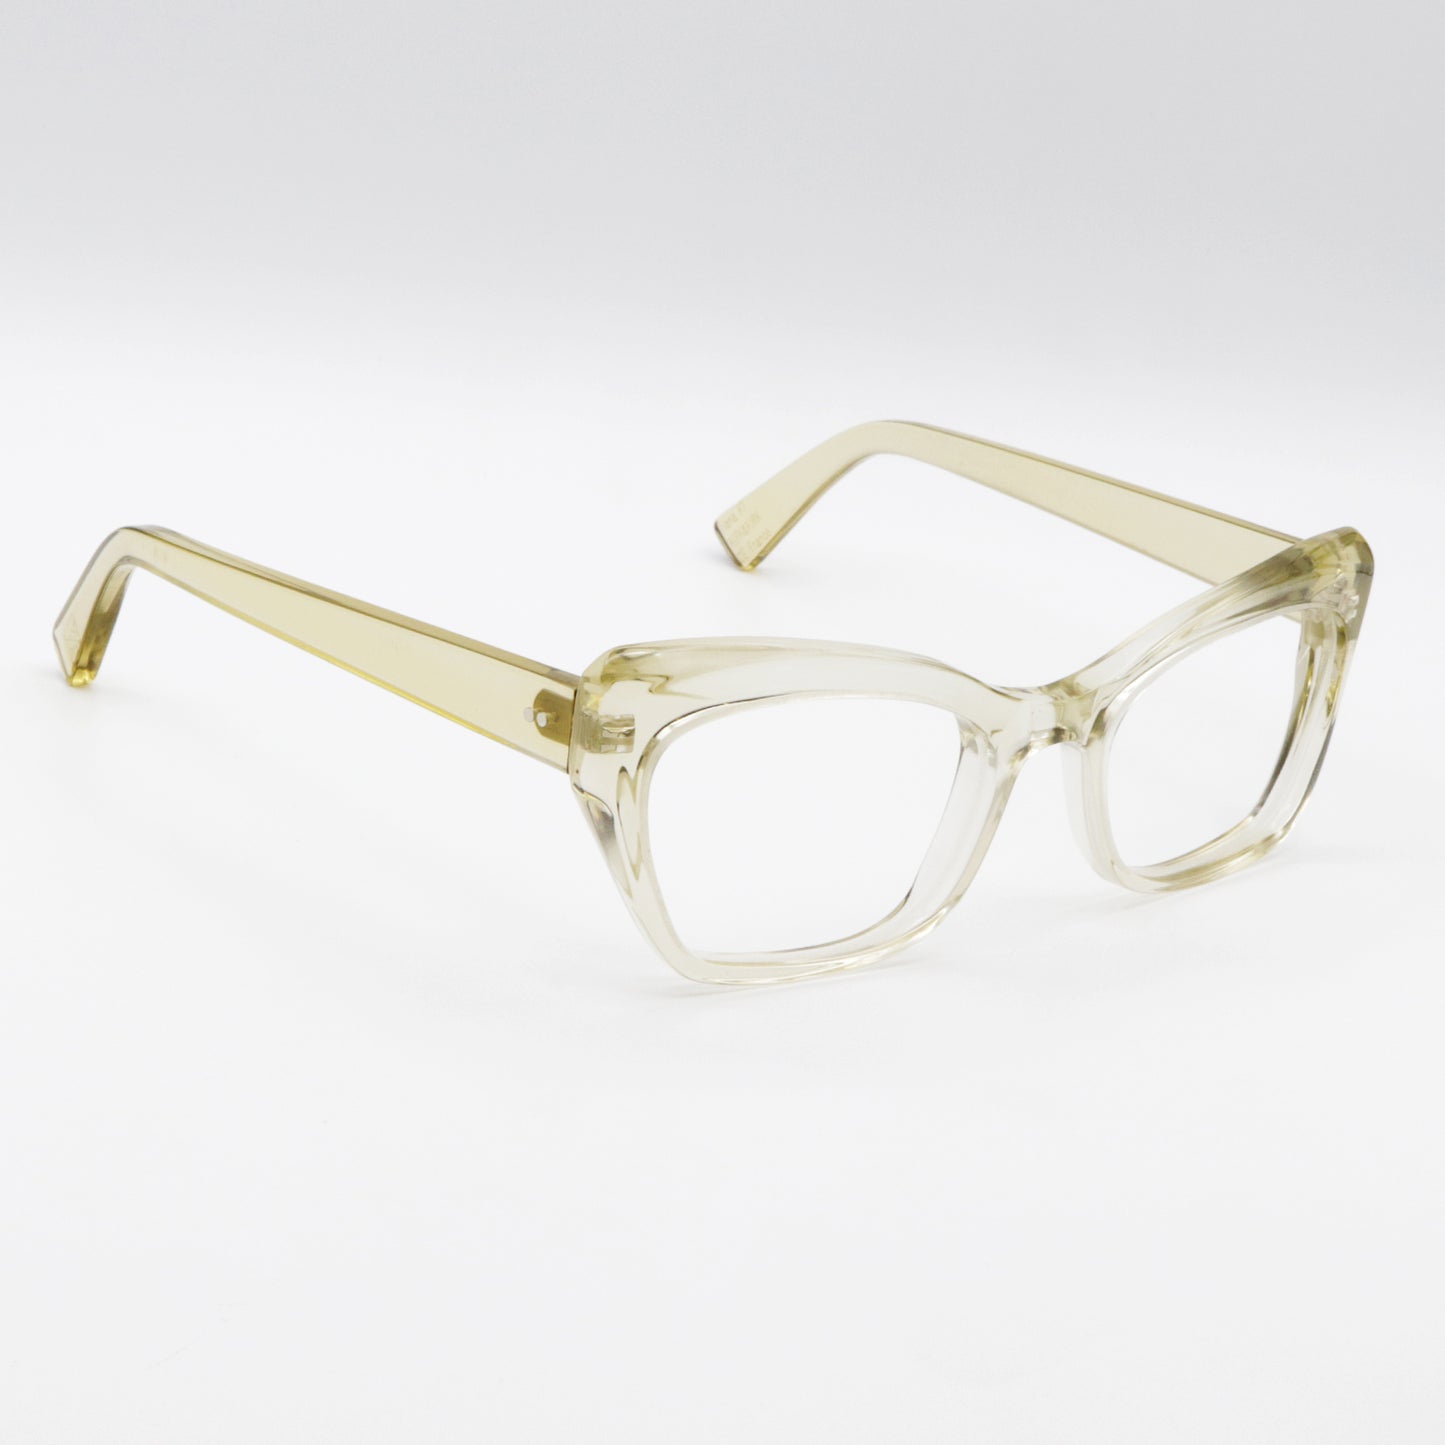 Hana K7 Kirk & Kirk Optical Glasses